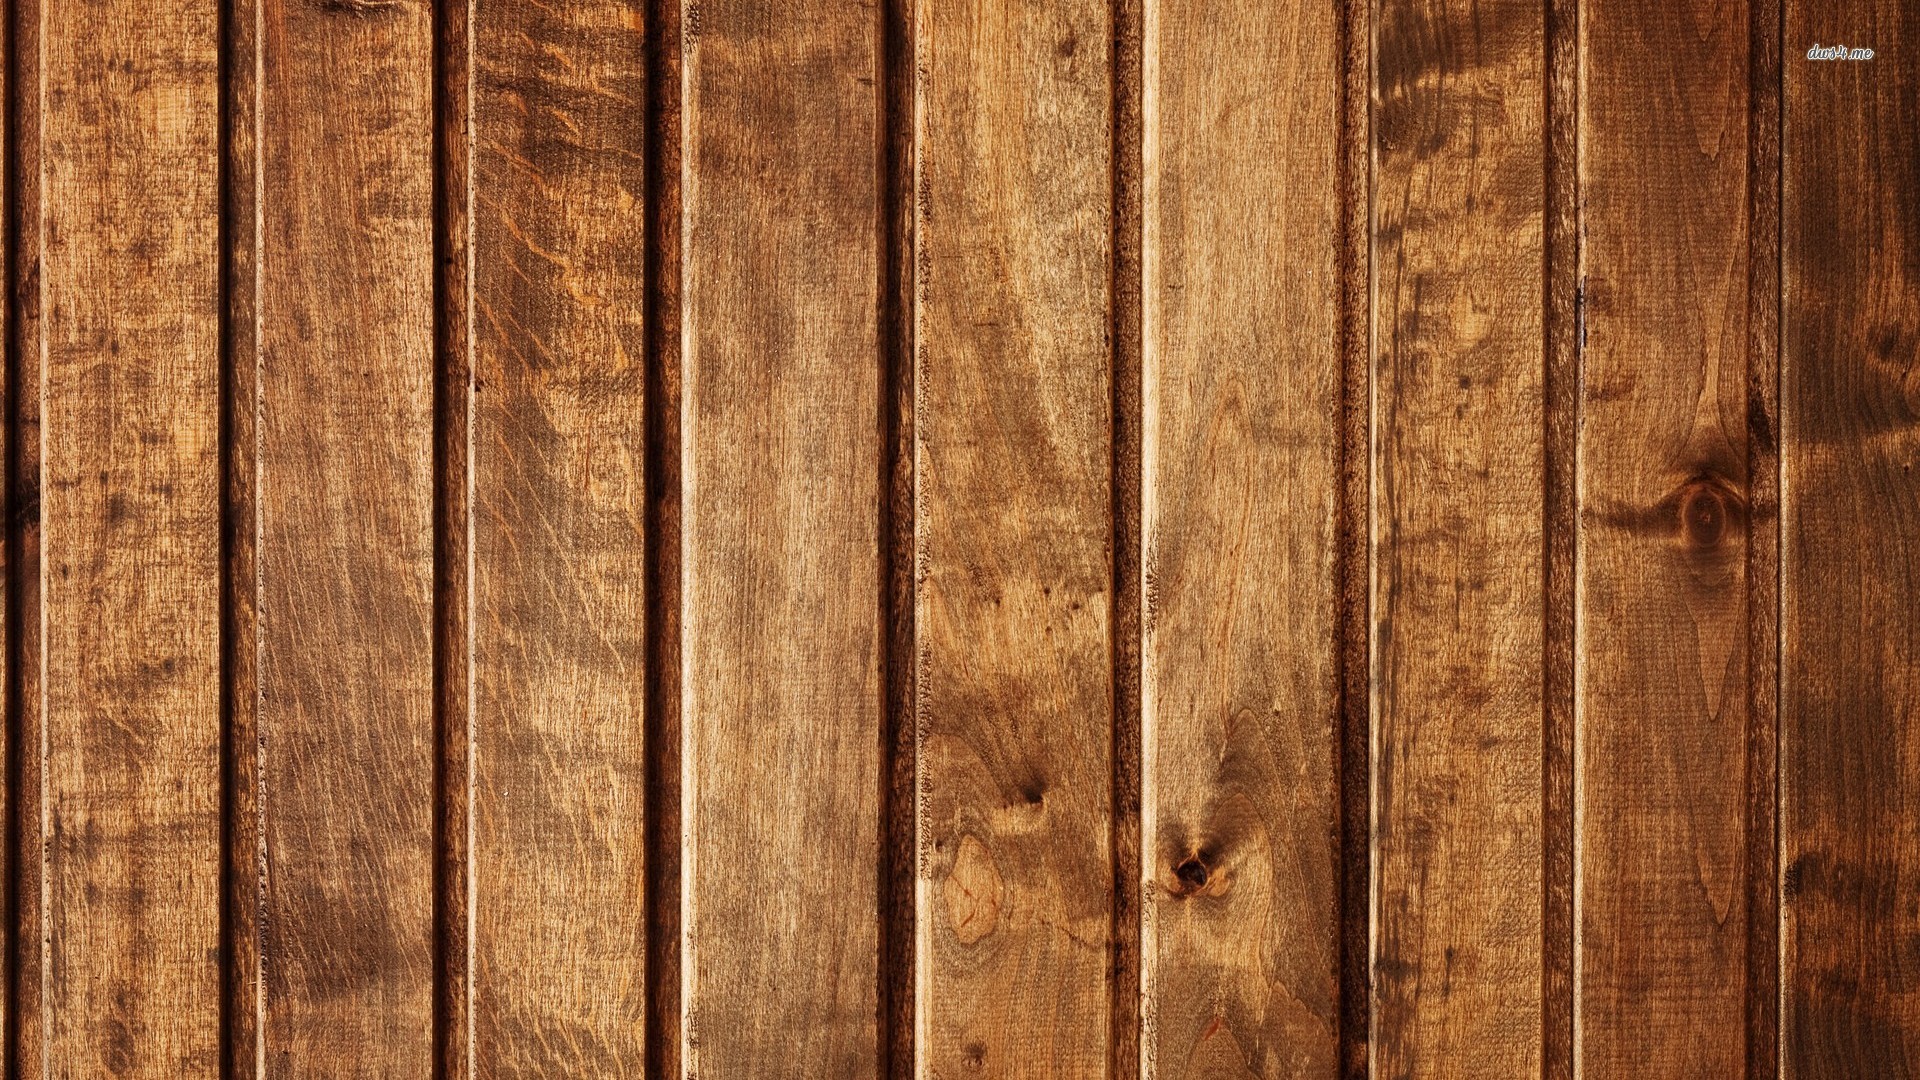 Hình nền vân gỗ là lựa chọn hoàn hảo để tạo nên một không gian nội thất ấm cúng và sang trọng. Hãy ngắm nhìn các hình ảnh về hình nền vân gỗ trên các bức tường hay trên các món đồ nội thất để cảm nhận sự hòa quyện hoàn hảo của chúng.